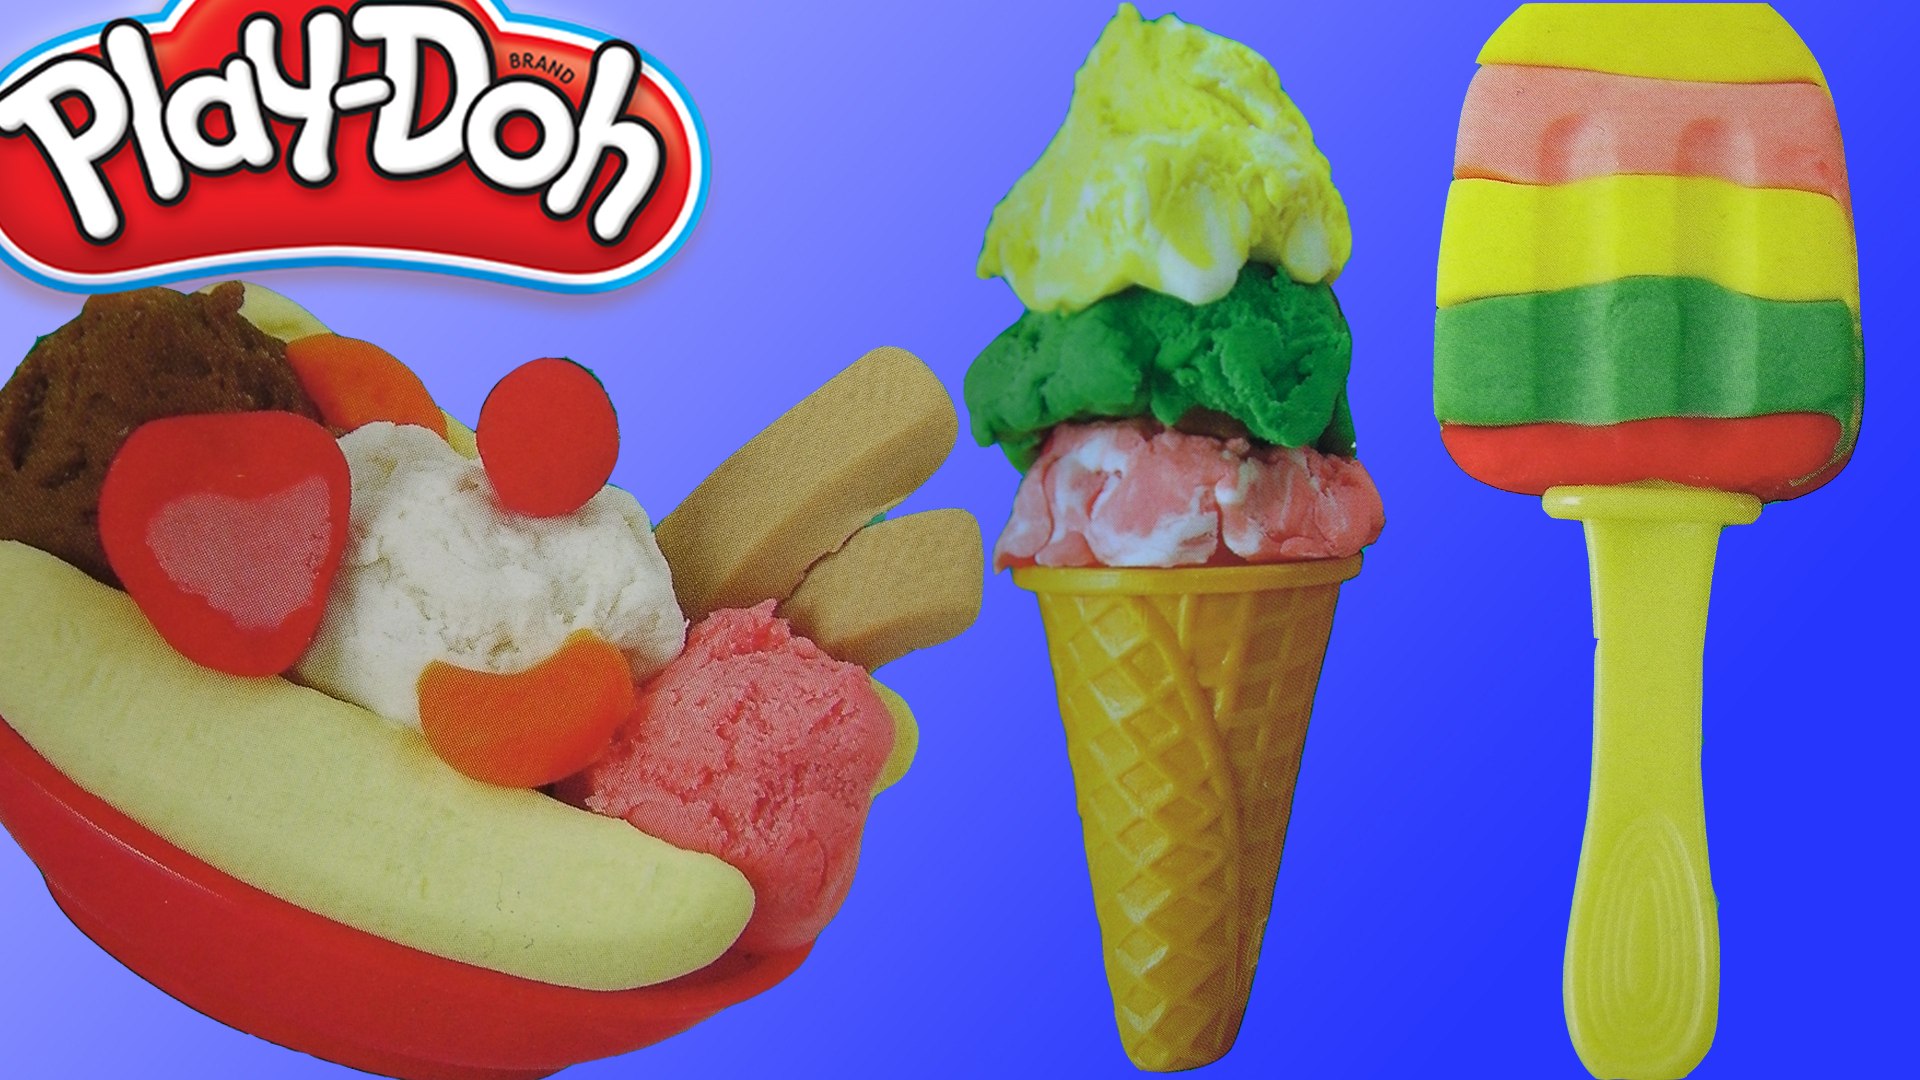 Playdoh Oyun Hamuru Dondurma Seti ile Tatlı ve Dondurma yapımı -  Dailymotion Video